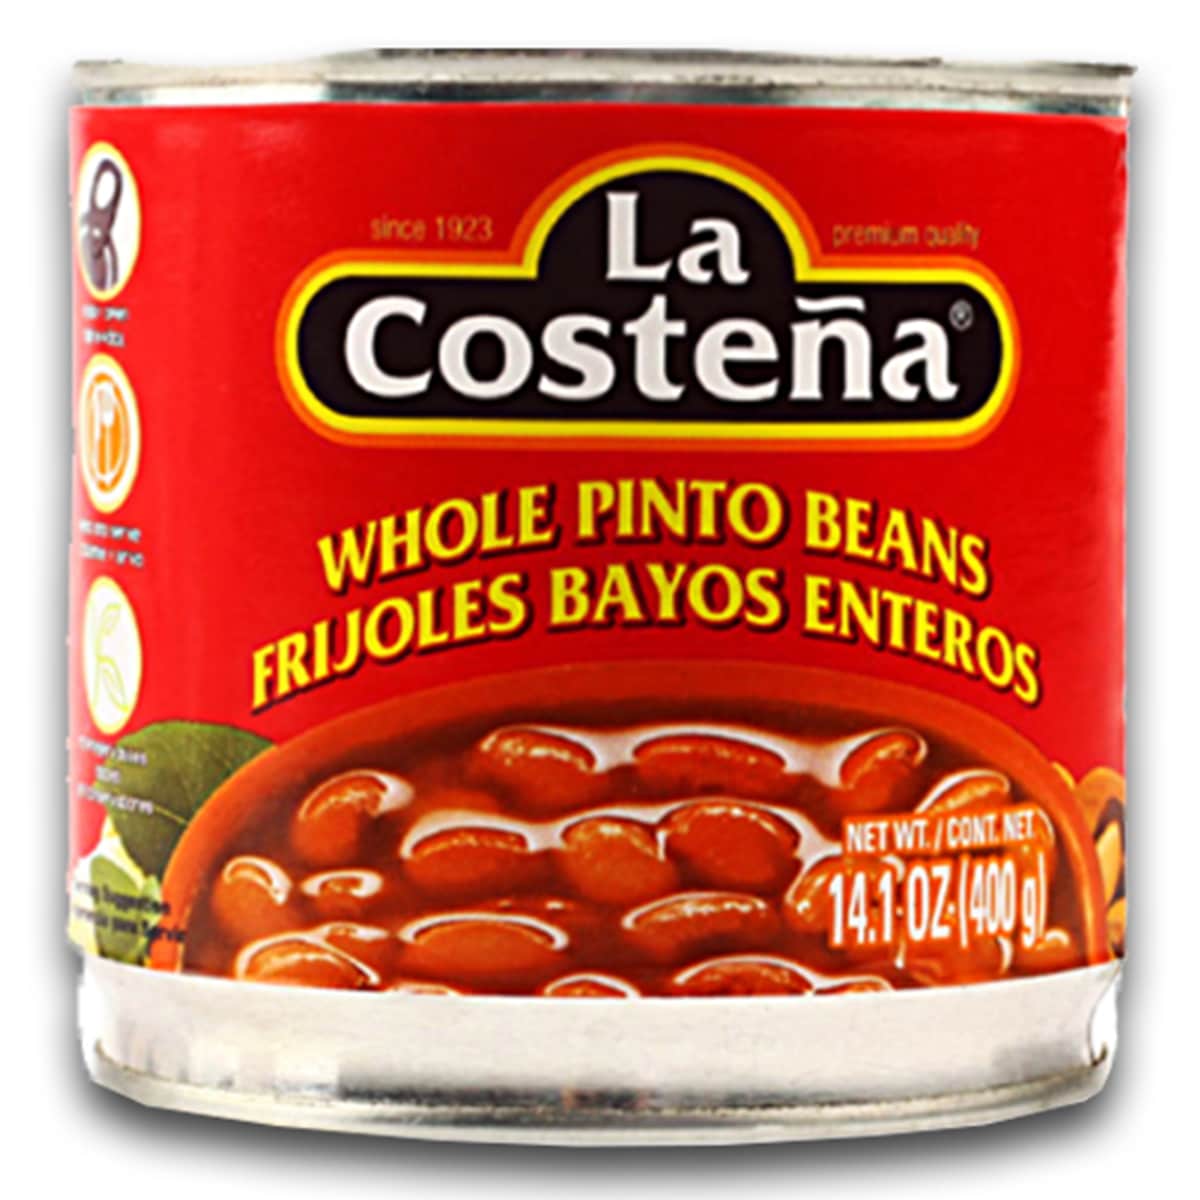 Buy La Costena Whole Pinto Beans (Frijoles Bayos Enteros) - 400 gm